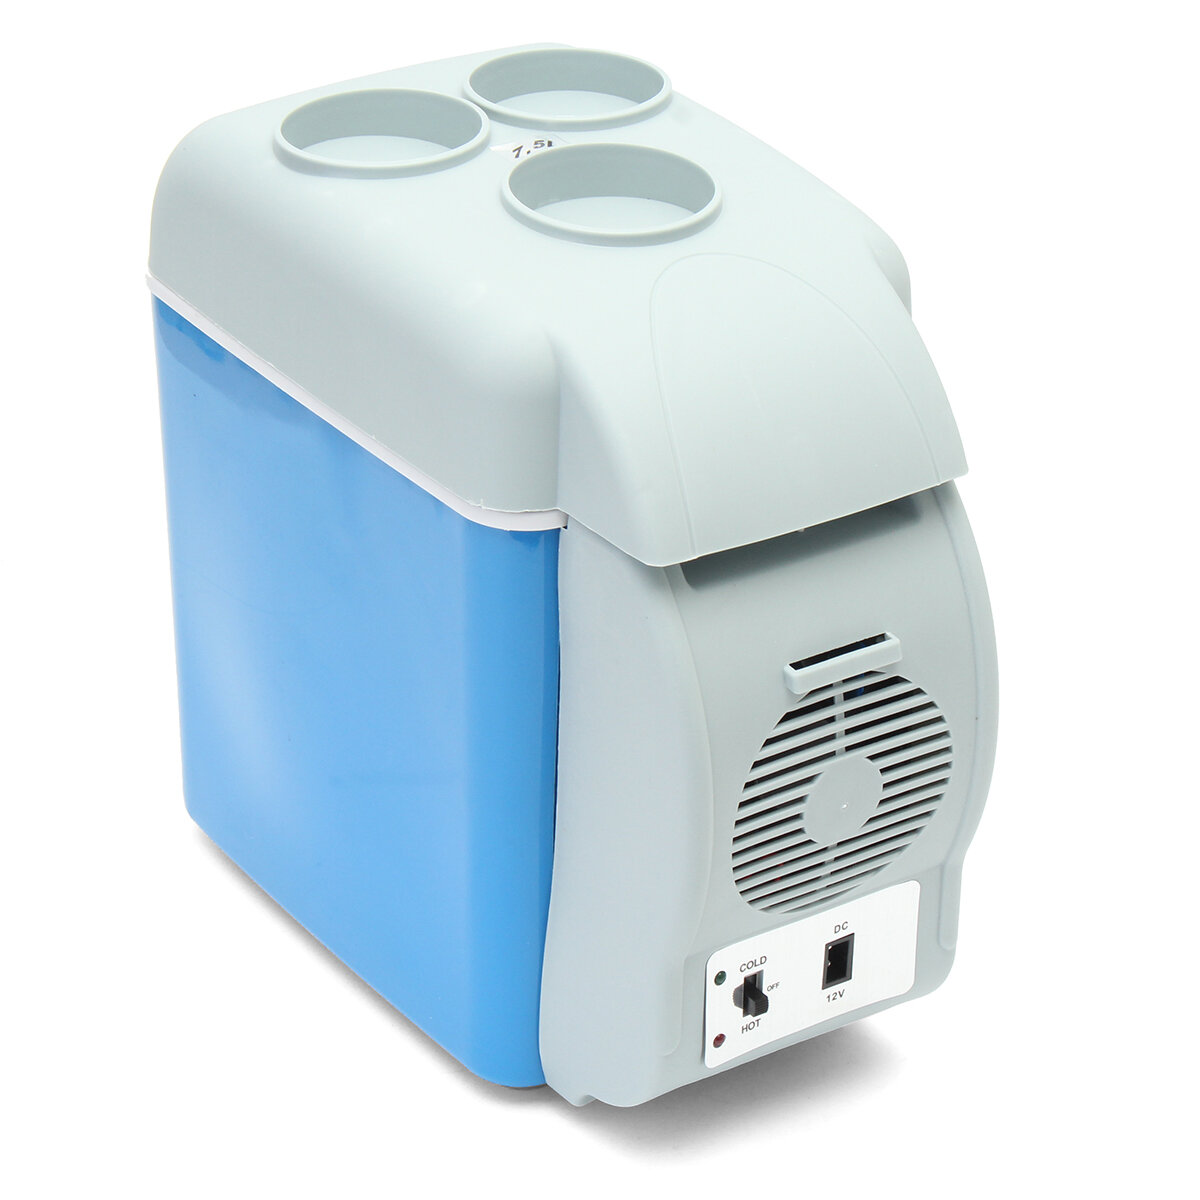 

Portable Mini Car Fridge Freezer Cooler / Warmer 12V Portable Fridge Refrigerator 7.5L